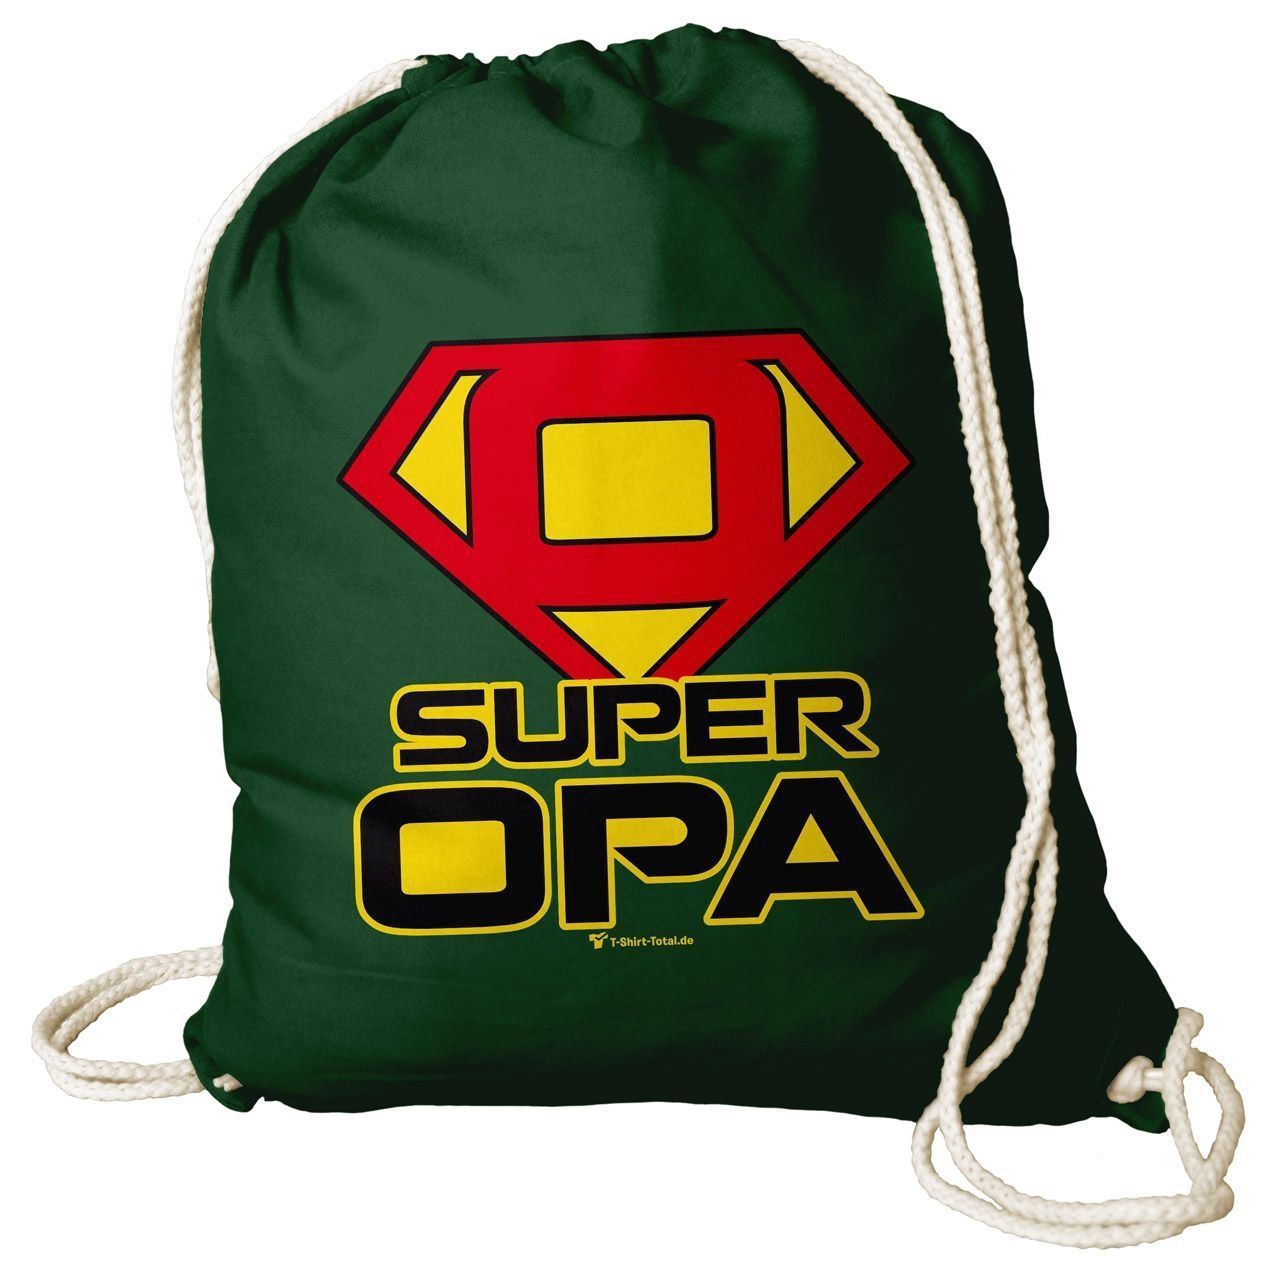 Super Opa Rucksack Beutel dunkelgrün